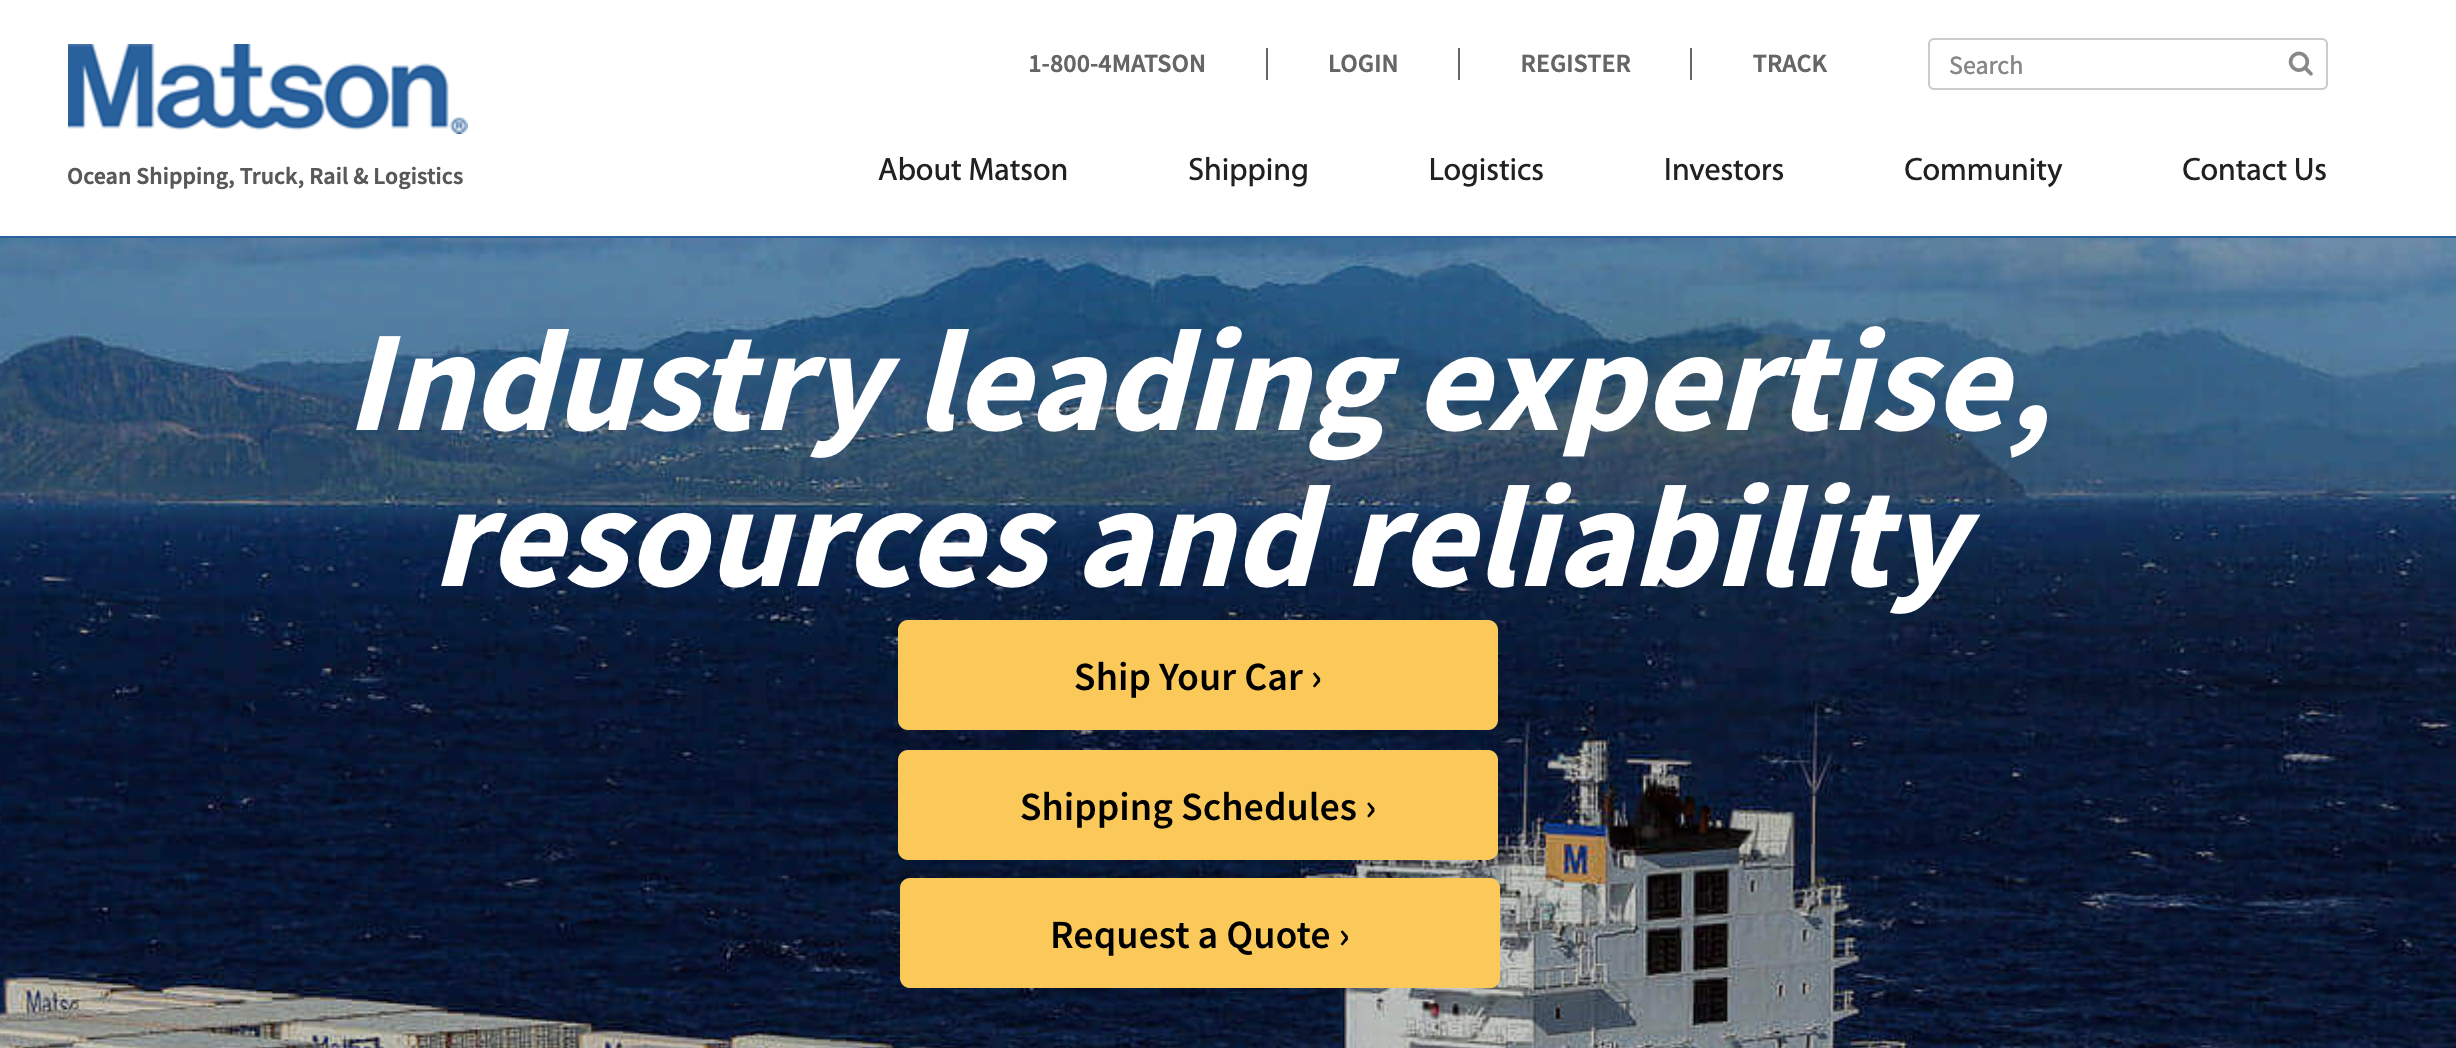 matson船公司美森海运官网,美森快船官网,船务轮船快船公司,航运业内领先的USocean航运运营商之一